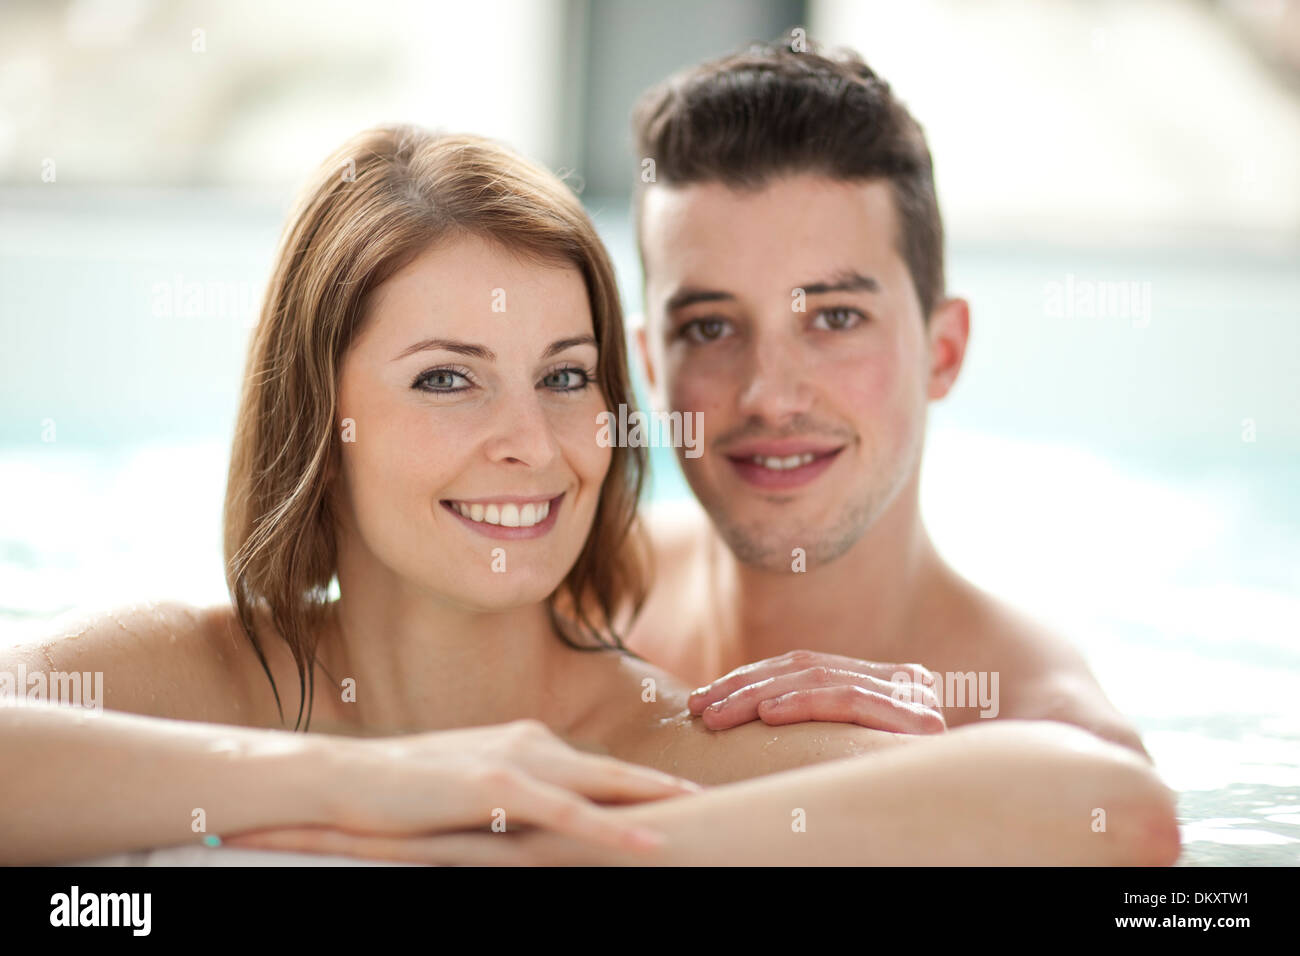 Svizzera Europa bagno ritratto di balneazione giovane uomo donna due i capelli castani acqua acqua sport wellness ben beeing salute acqua Foto Stock